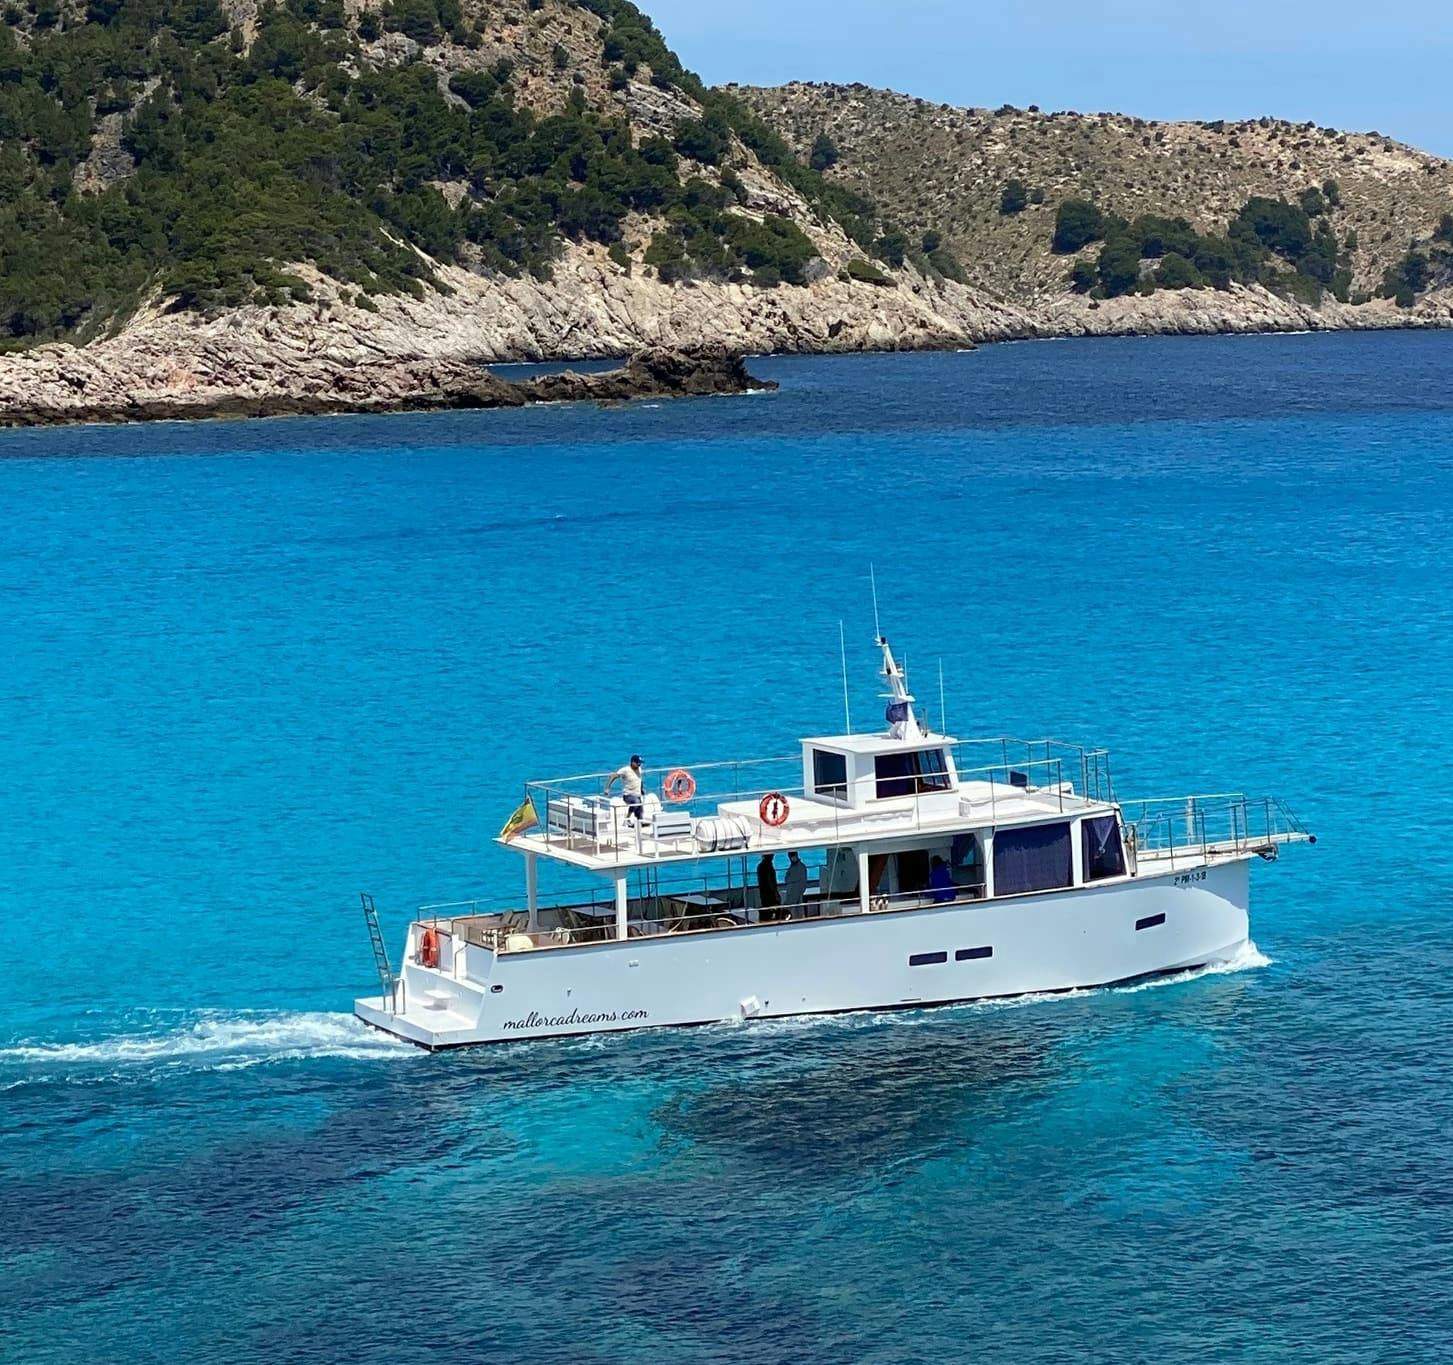 Mallorca Dreams Boat Tour